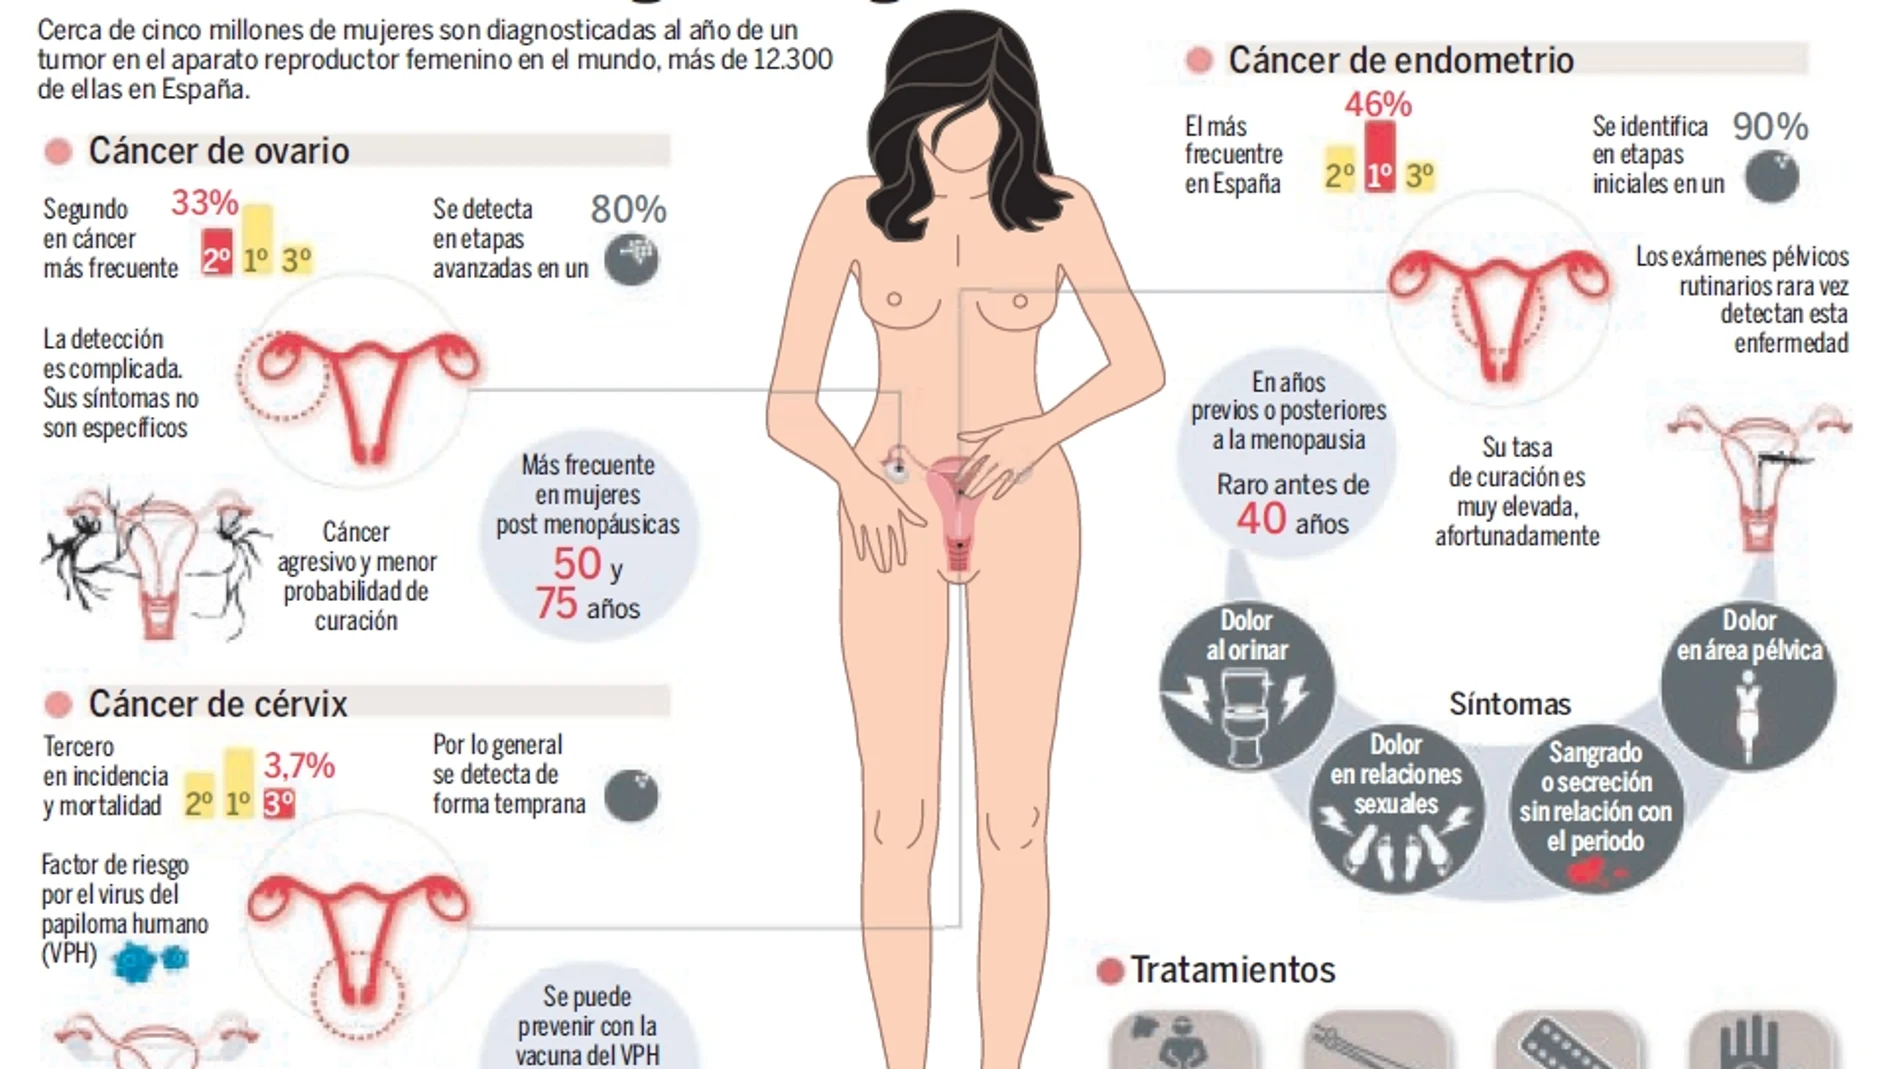 Principales datos y cifras de los otros tumores de la mujer